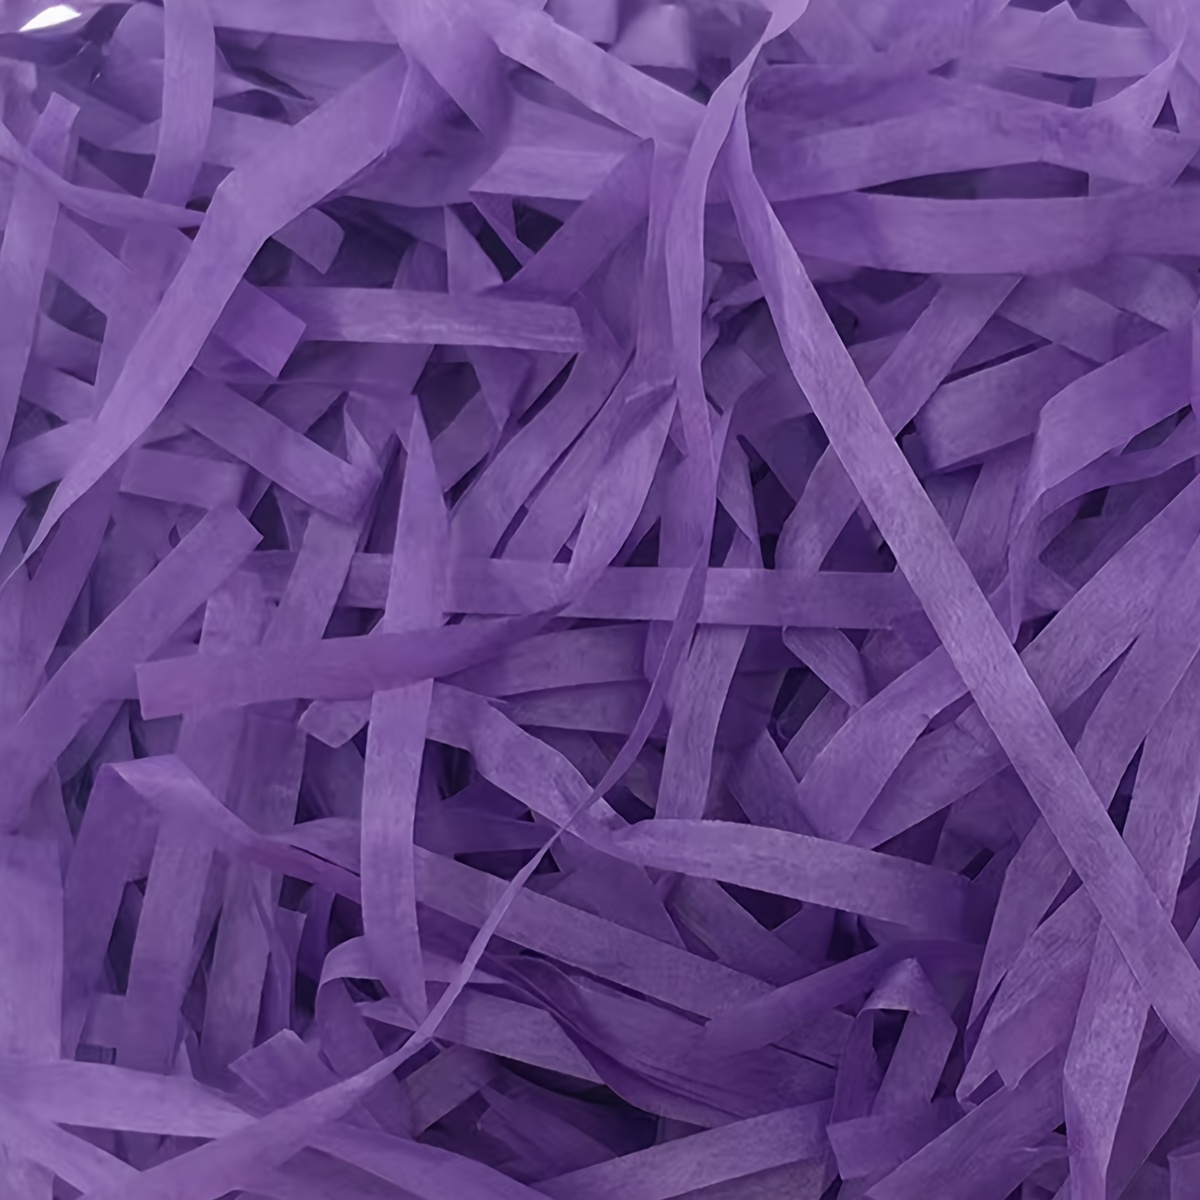 Shredded Purple Paper / Confetti